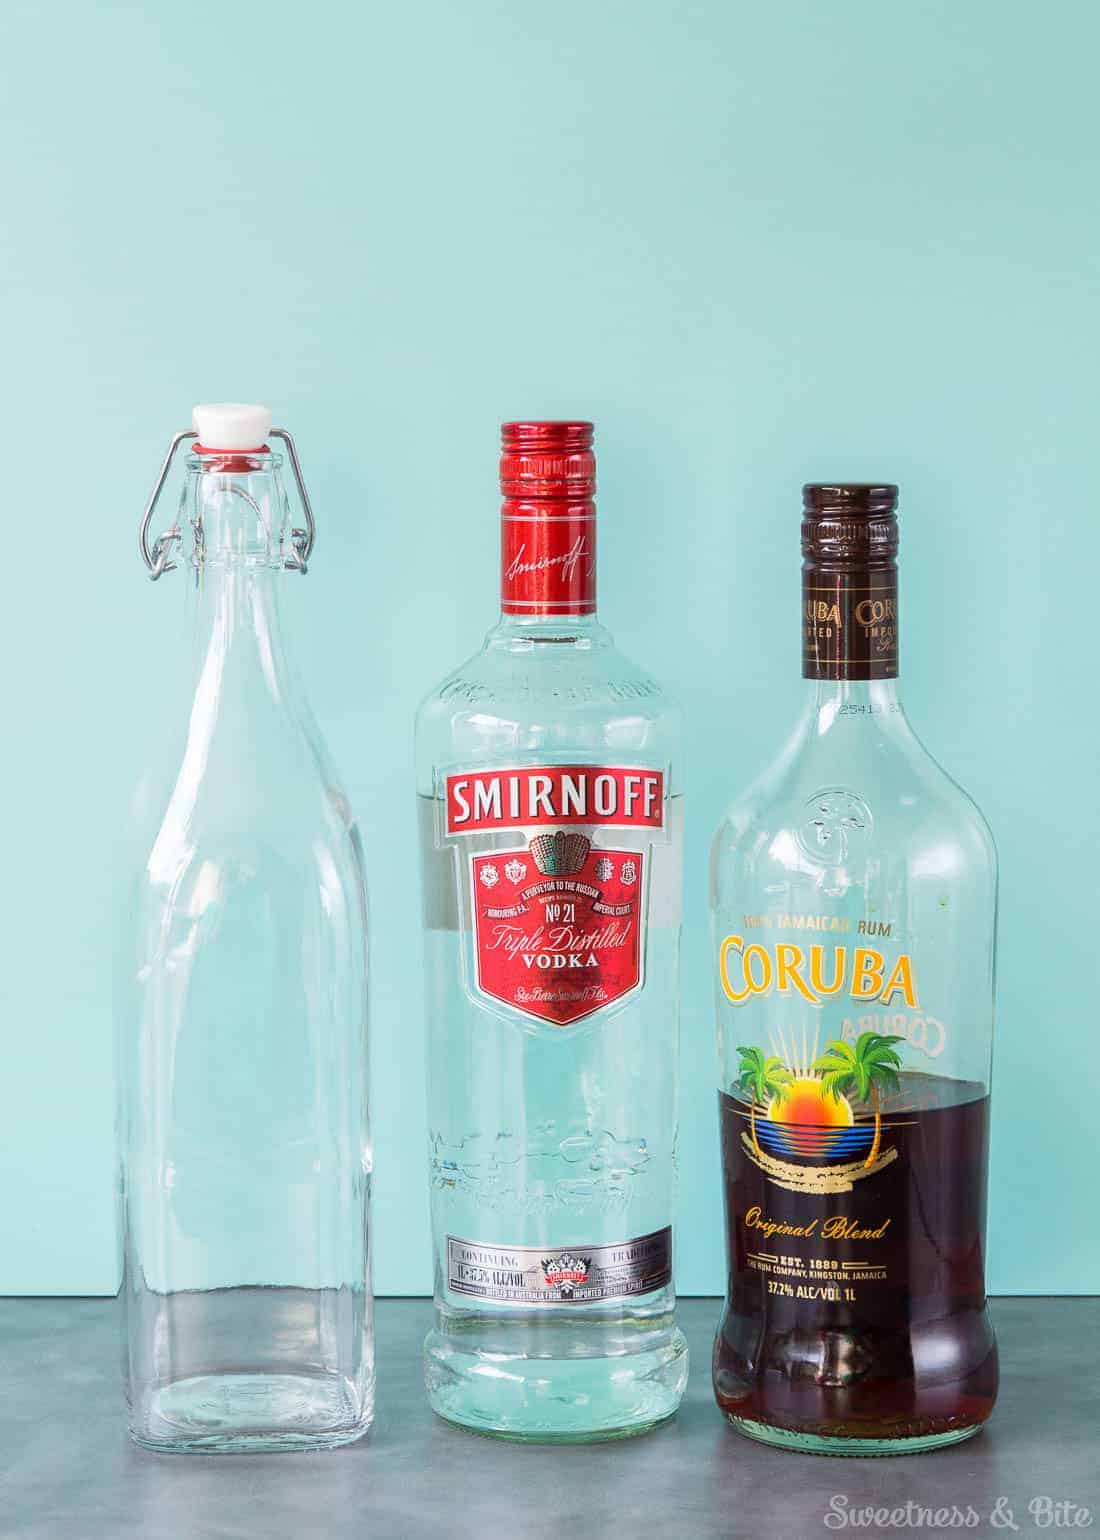 An empty swing-top bottle, a bottle of Smirnoff vodka and a bottle of Coruba rum.